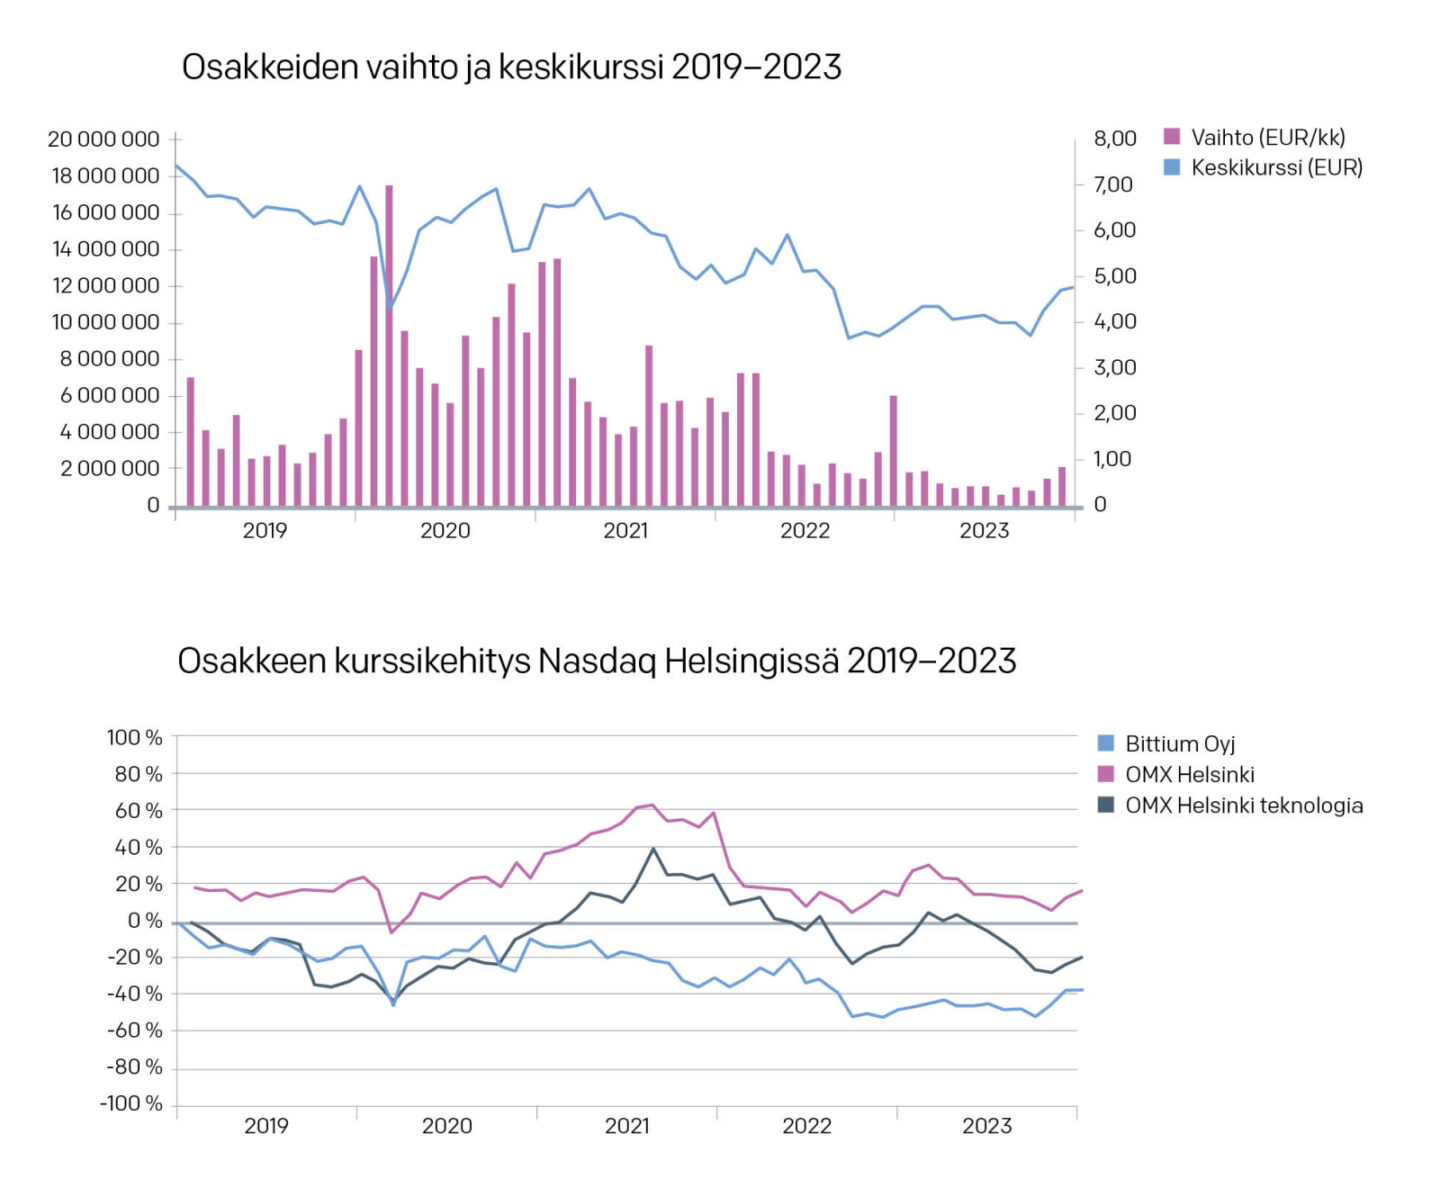 Osakkeiden vaihto ja keskikurssi 2019-2023
Osakkeen kurssikehitys Nasdaq Helsingissä 2019-2023